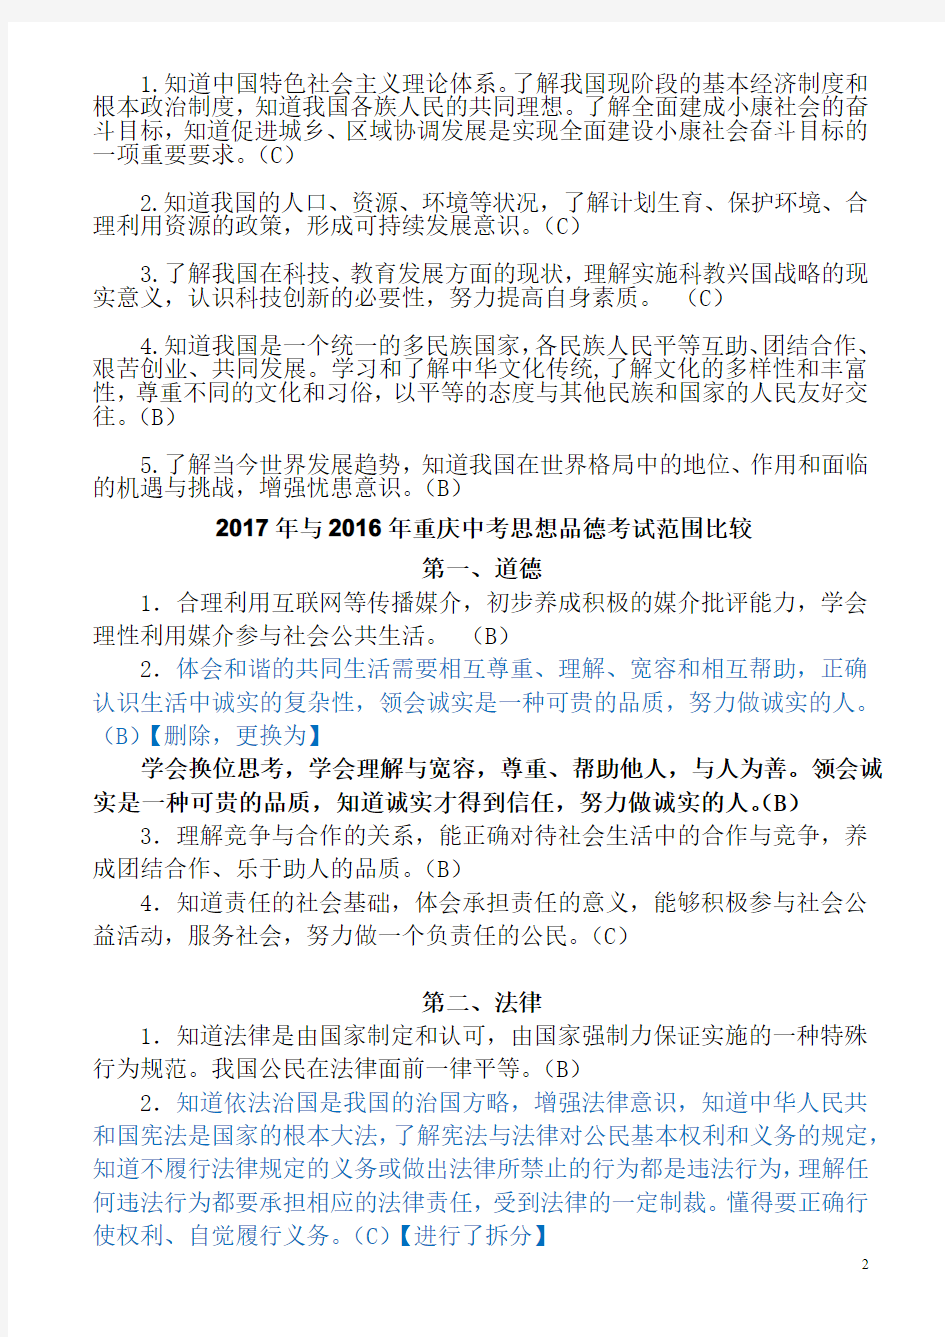 2017年重庆中考思想品德考试范围